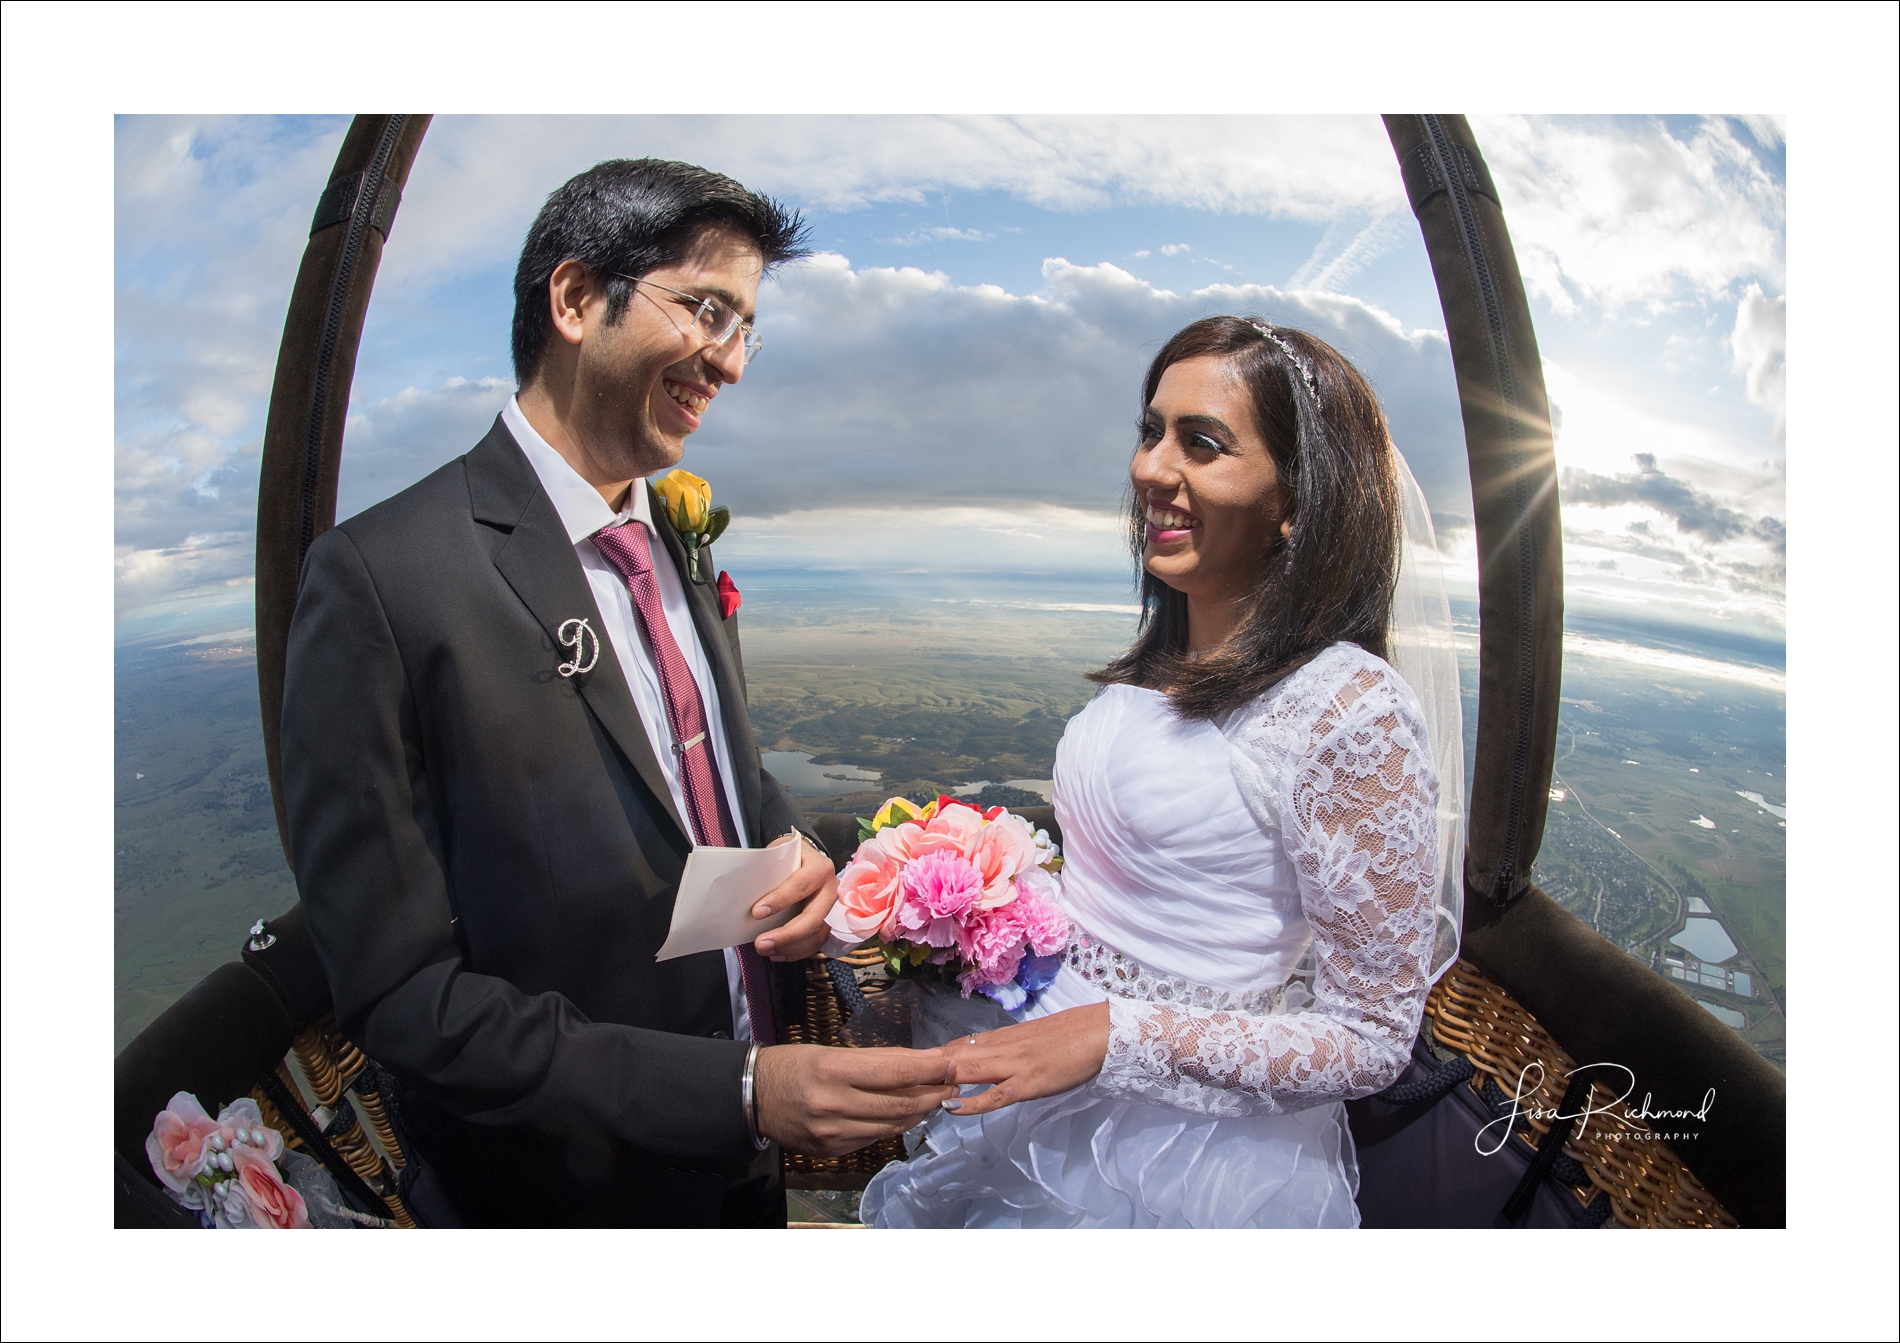 Up, up and away&#8230;.Nikhil + Disha elope in a beautiful hot air balloon